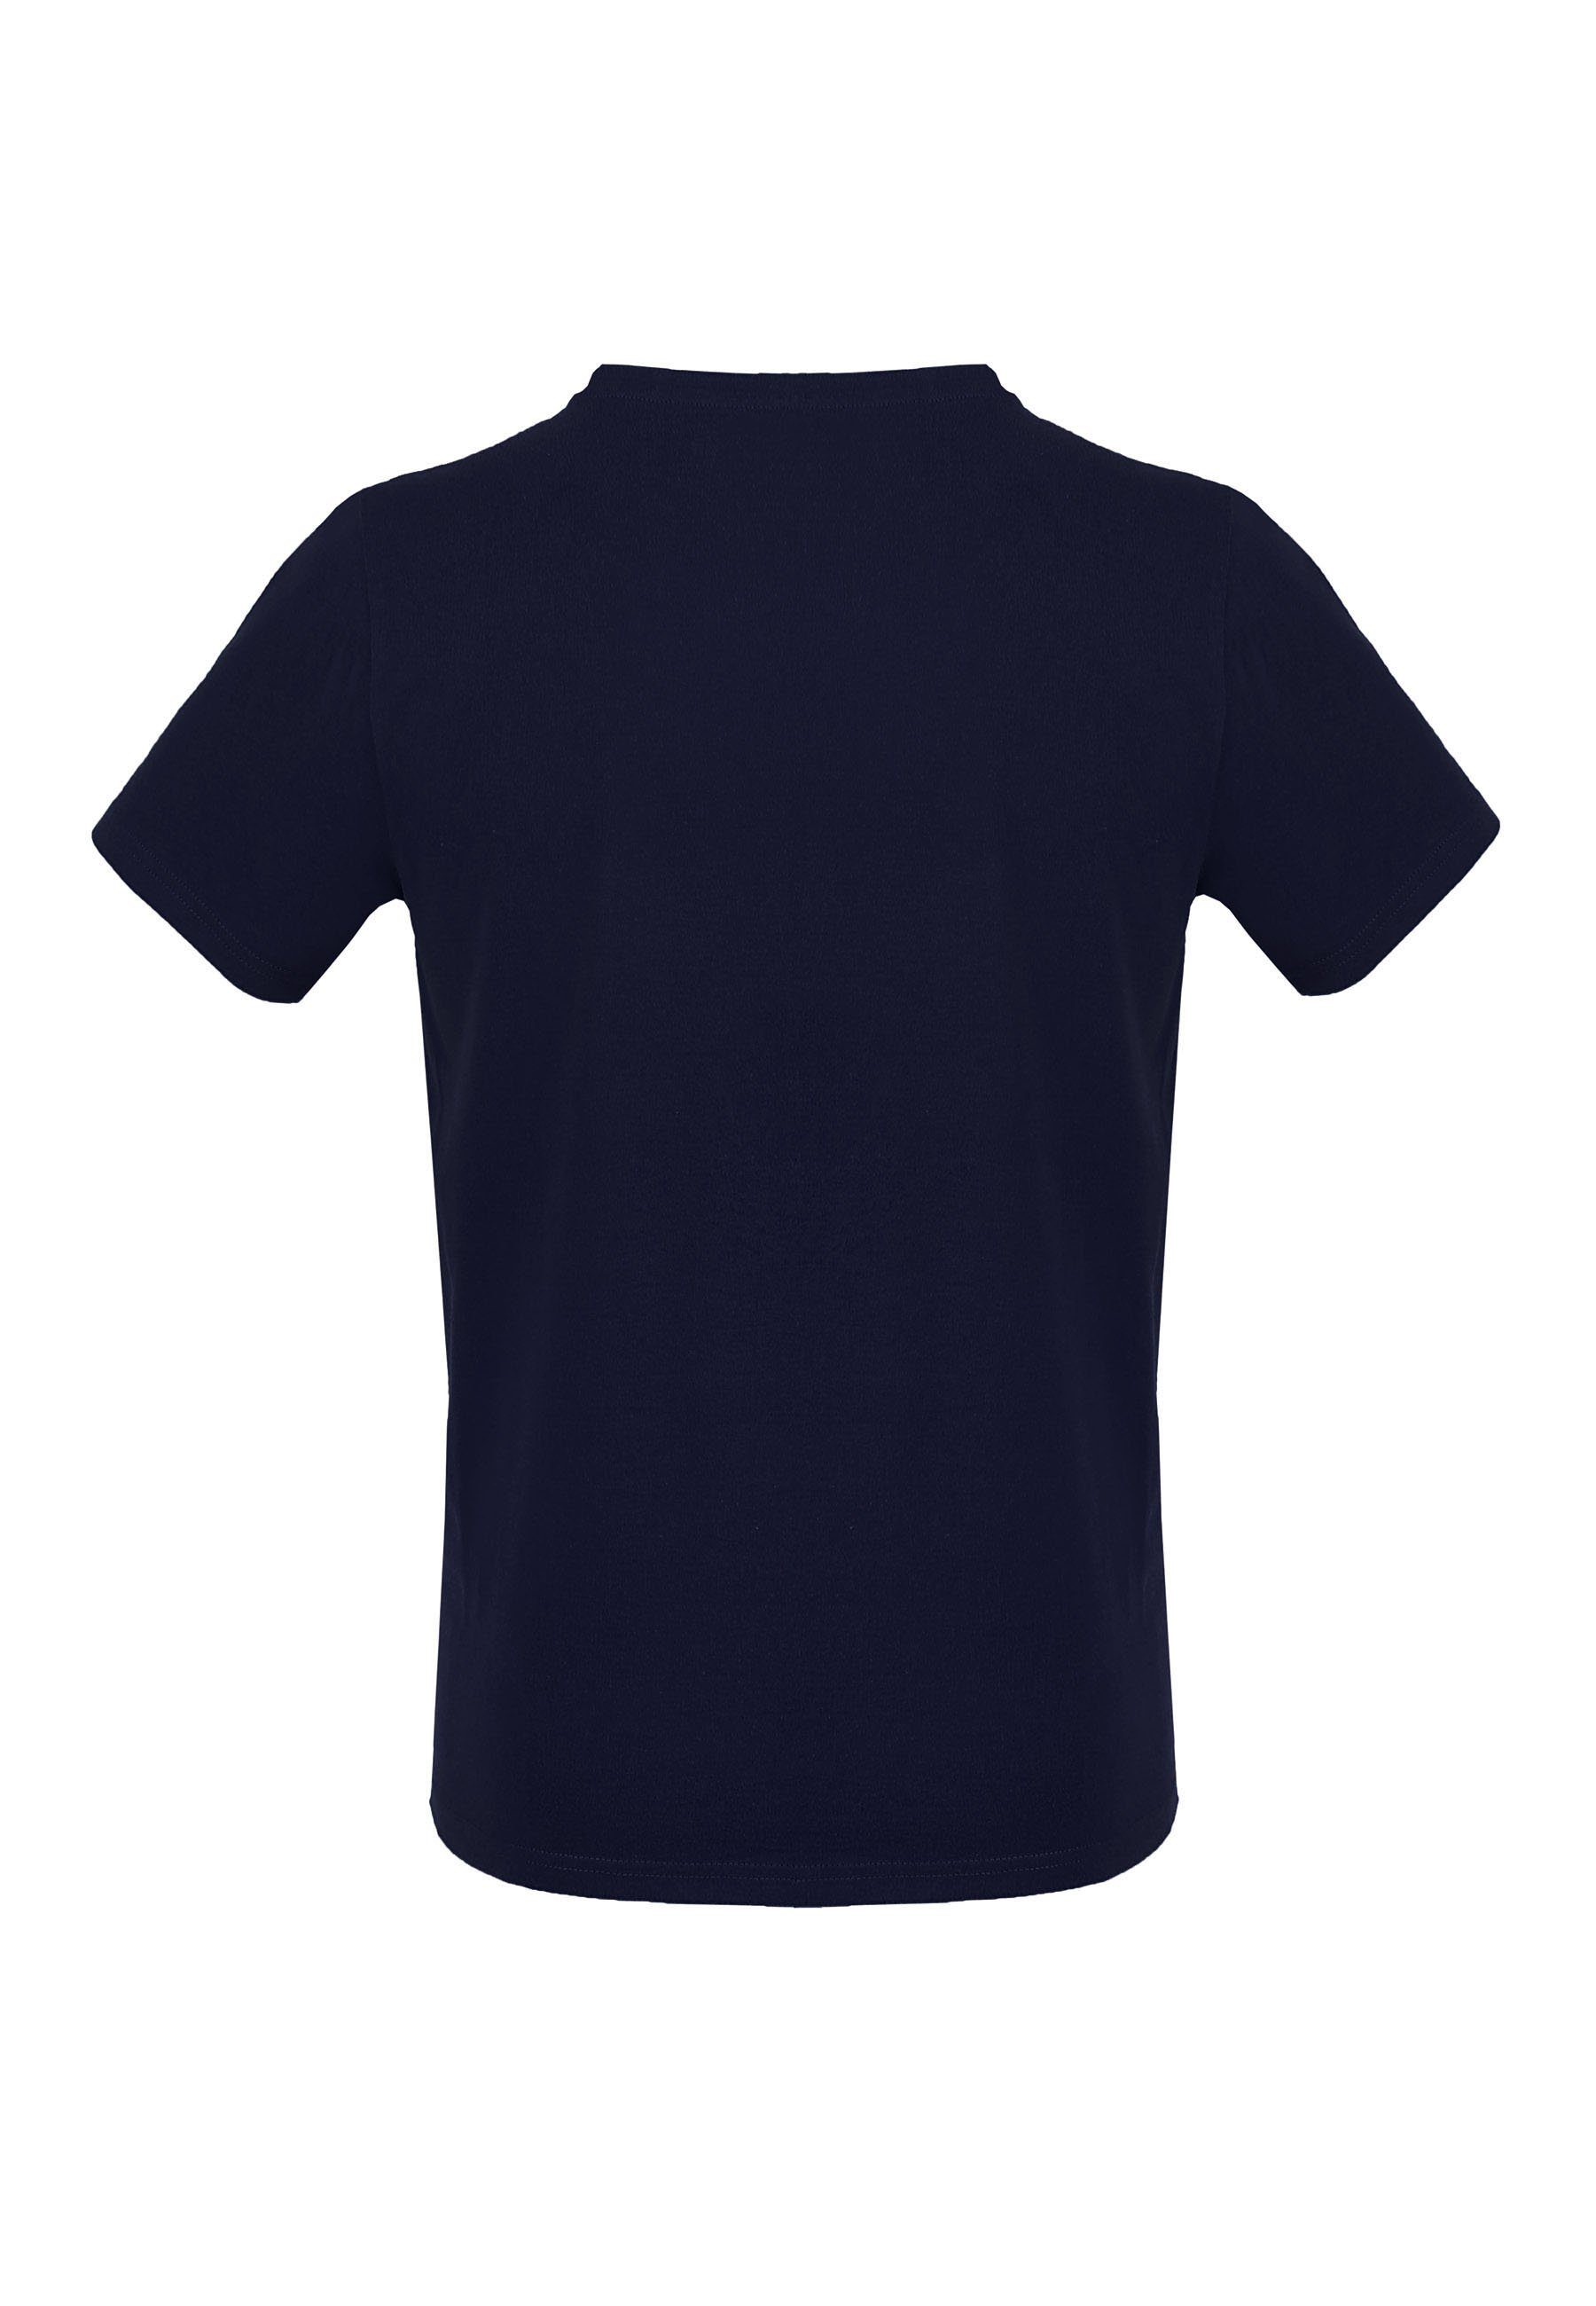 MELA Kurzarmshirt navy Basic T-Shirt